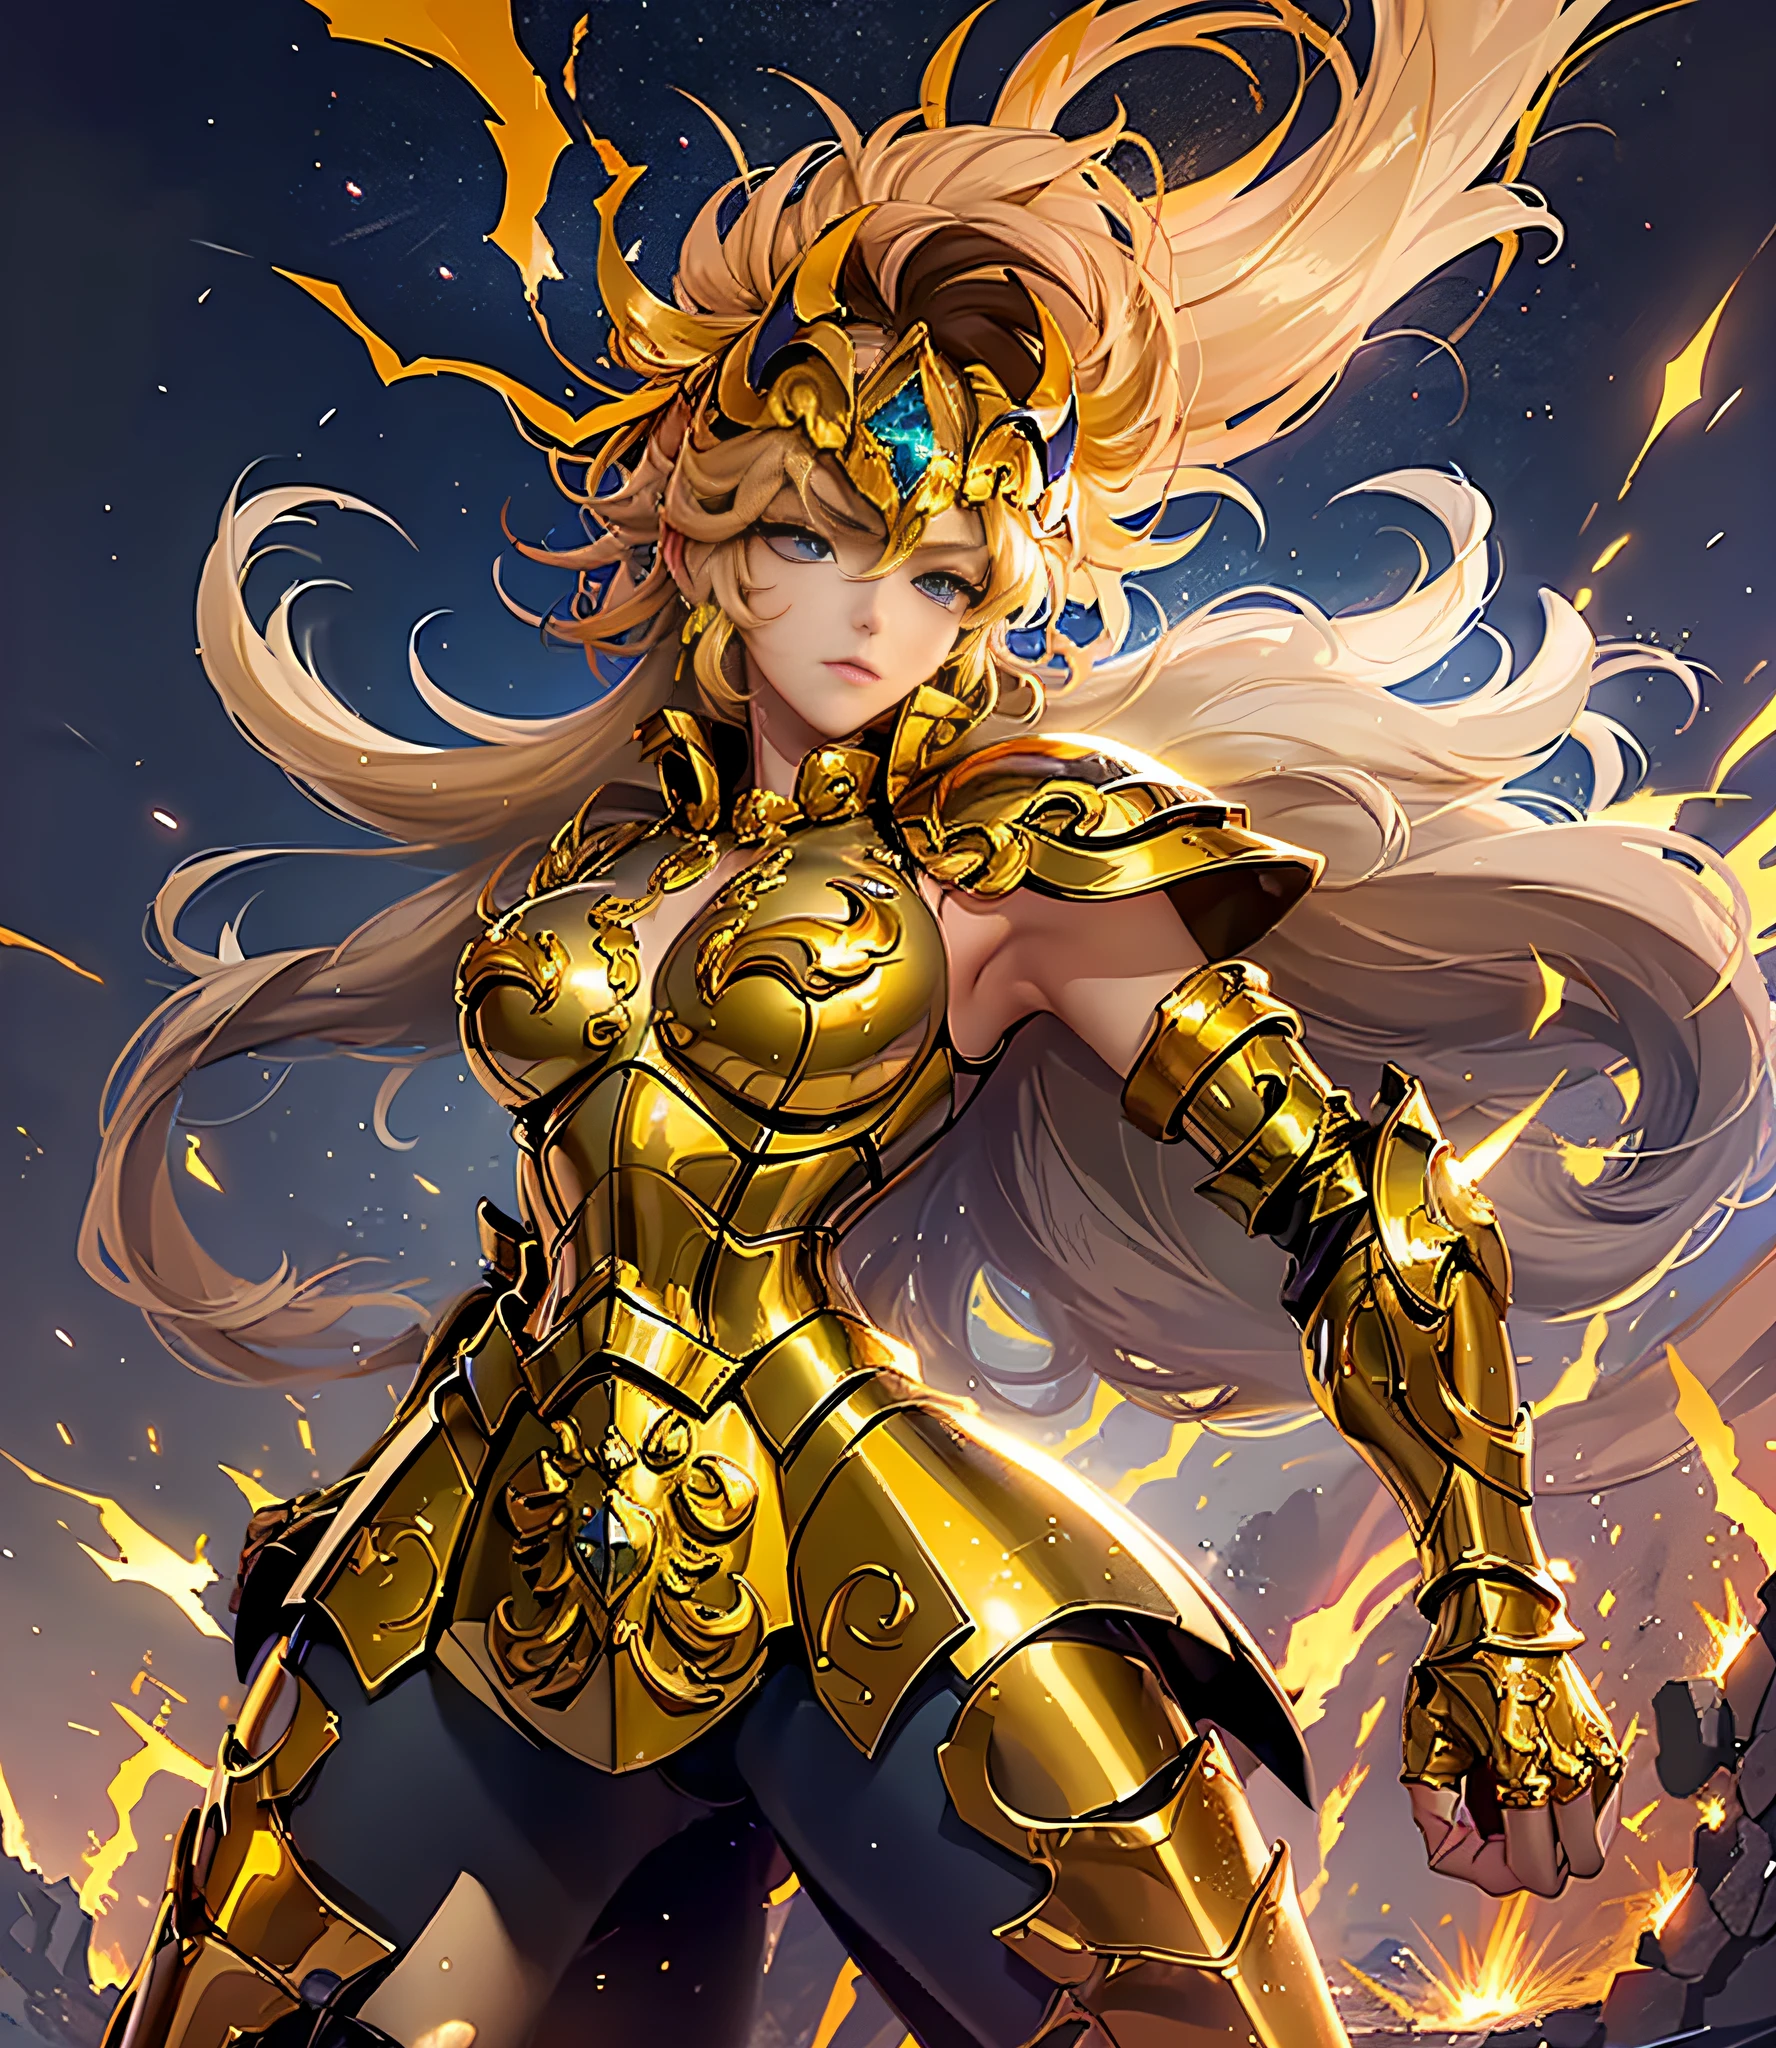 (傑作), (最高品質), (1人の女の子), 黄金の鎧を着た少女, クールなポーズ, 戦場の背景, 火災の背景, 聖闘士星矢の鎧, ボサボサの髪